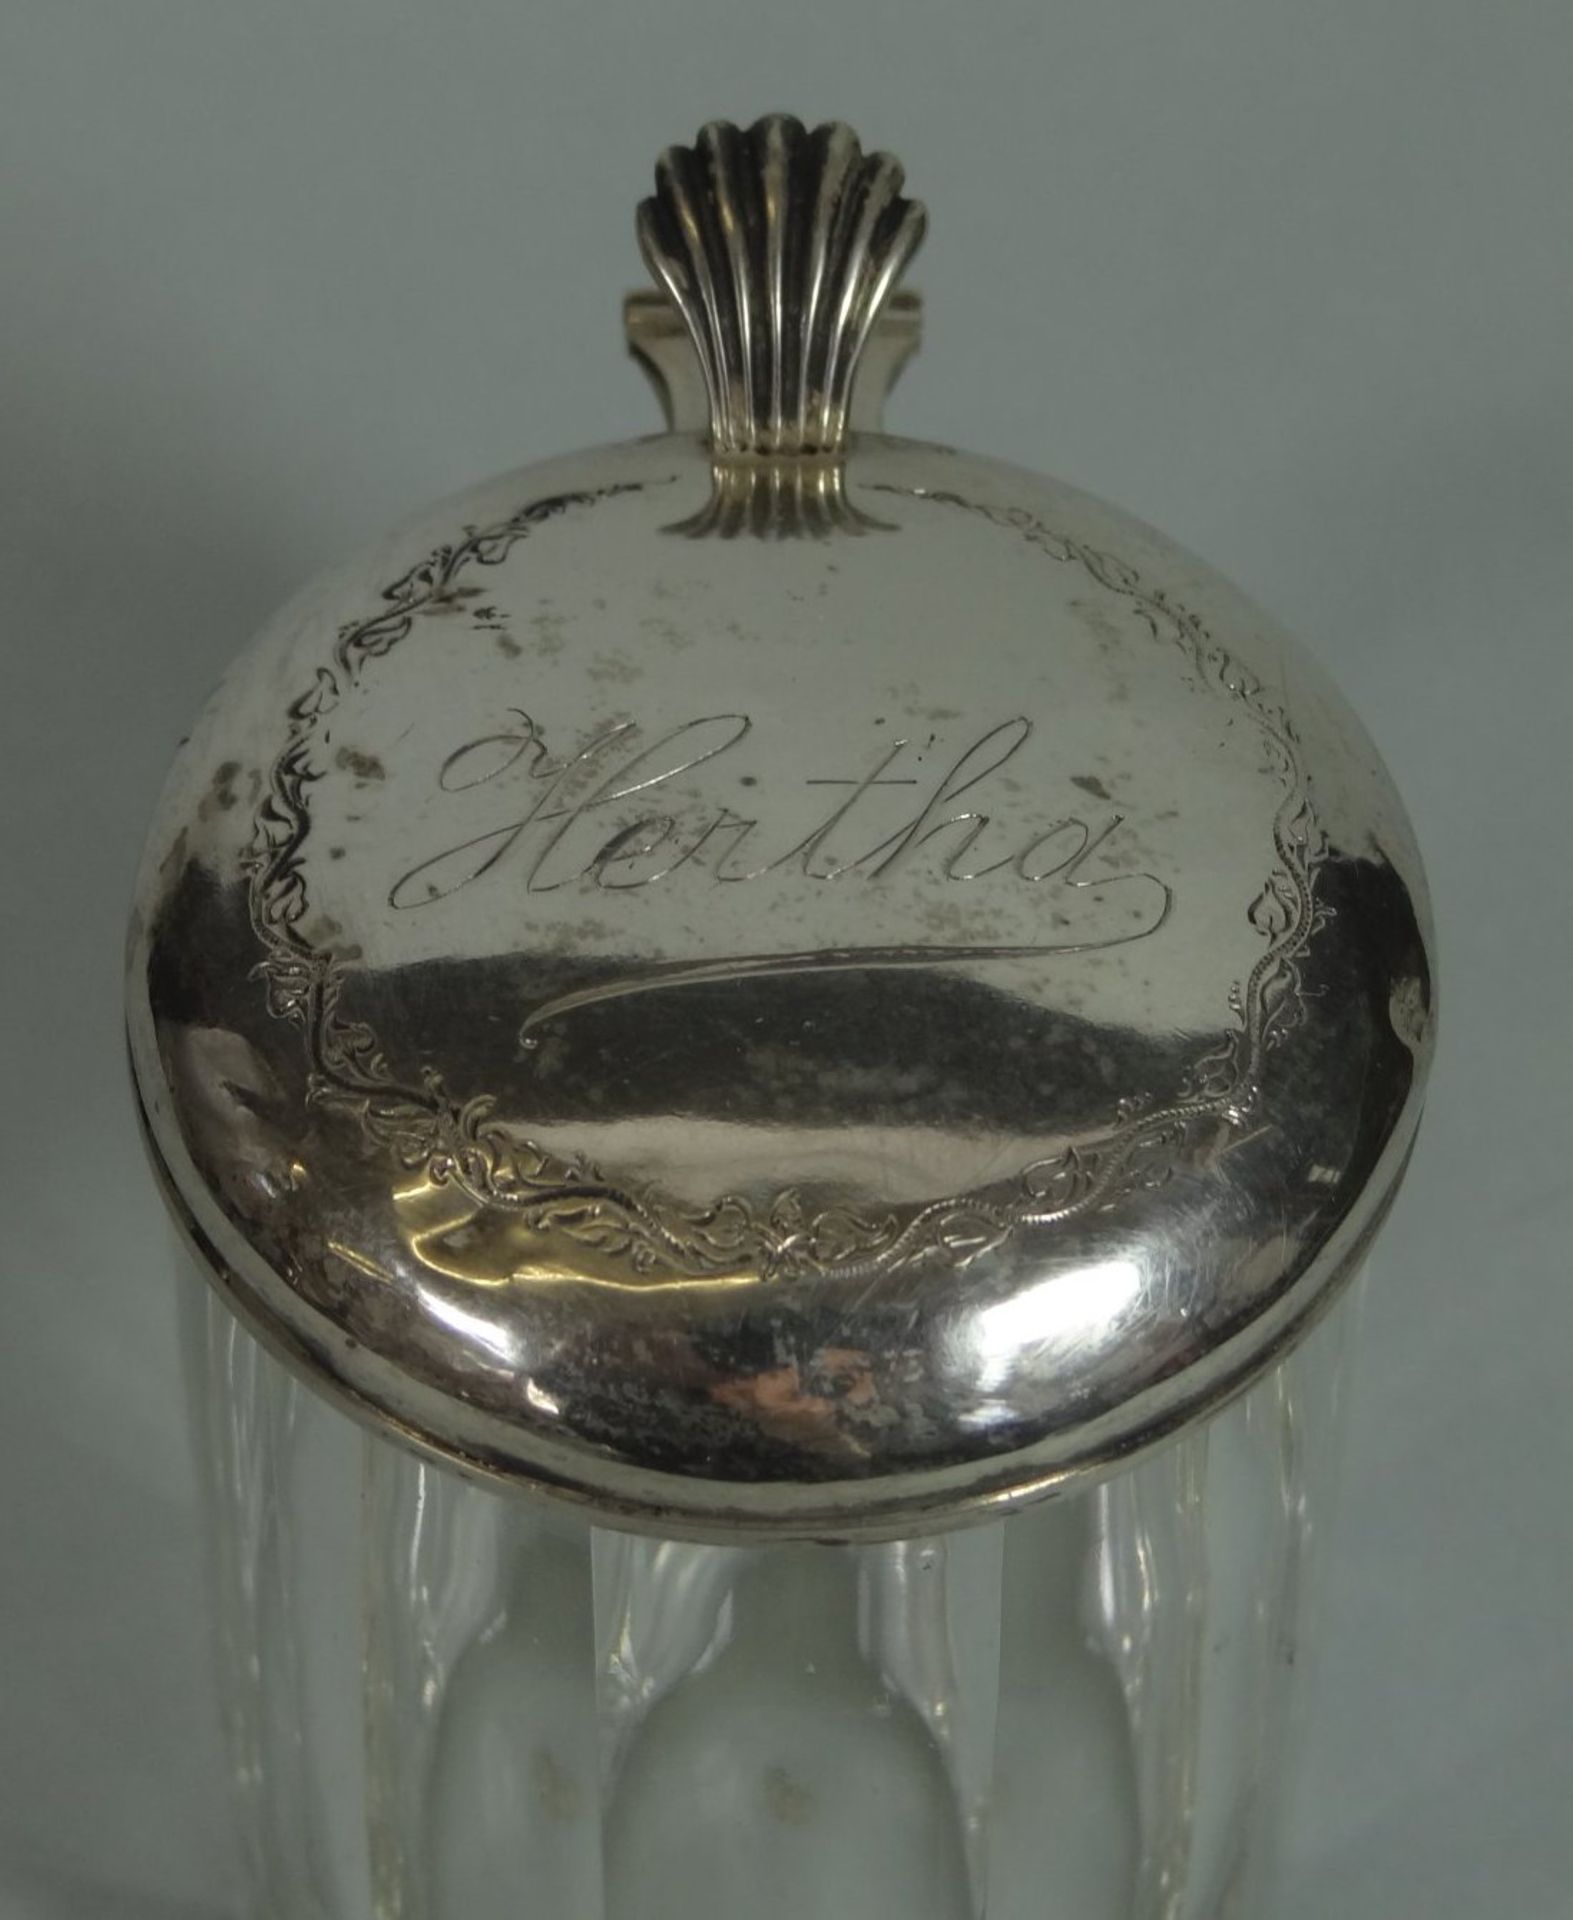 kl. Bierkrug mit Silberdeckel, , beschriftet "Hertha", um 1900, Deckel innen vergoldet, verdellt, - Image 3 of 4